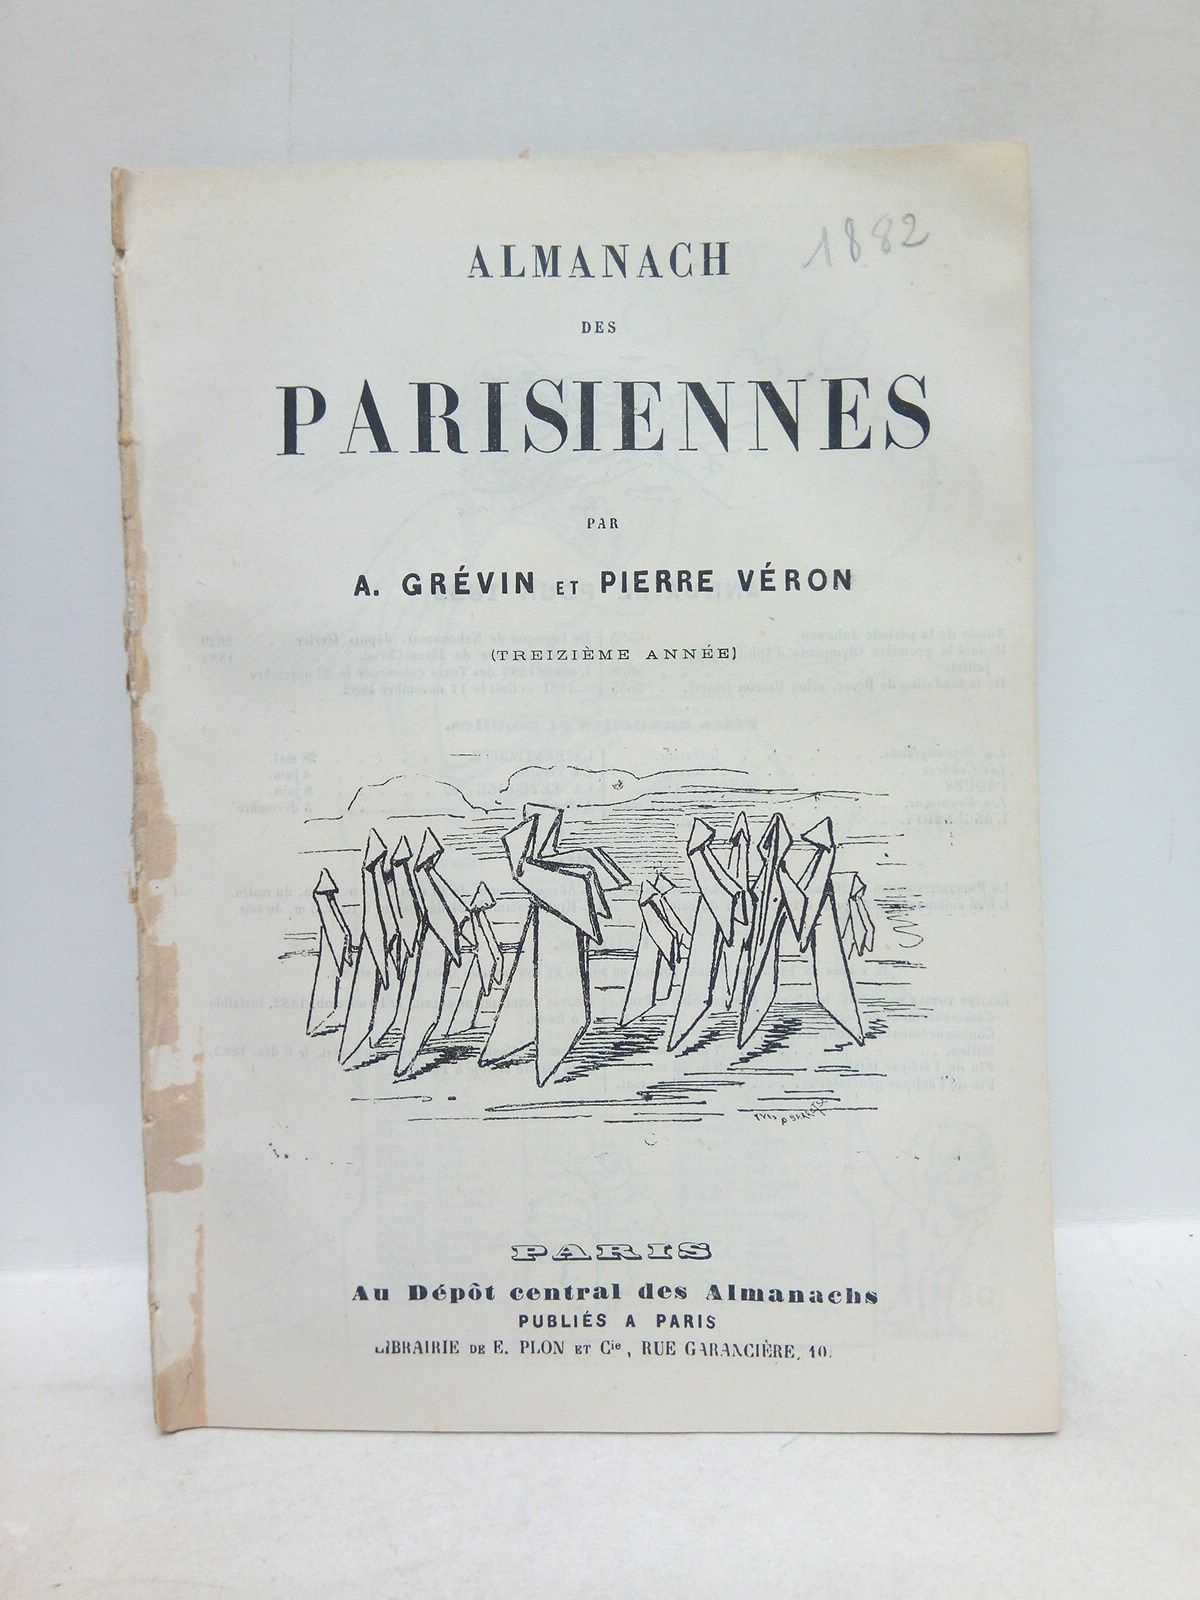 GRVIN, A. el A. Huart - Almanach des Parisiennes. (Treizime anne)